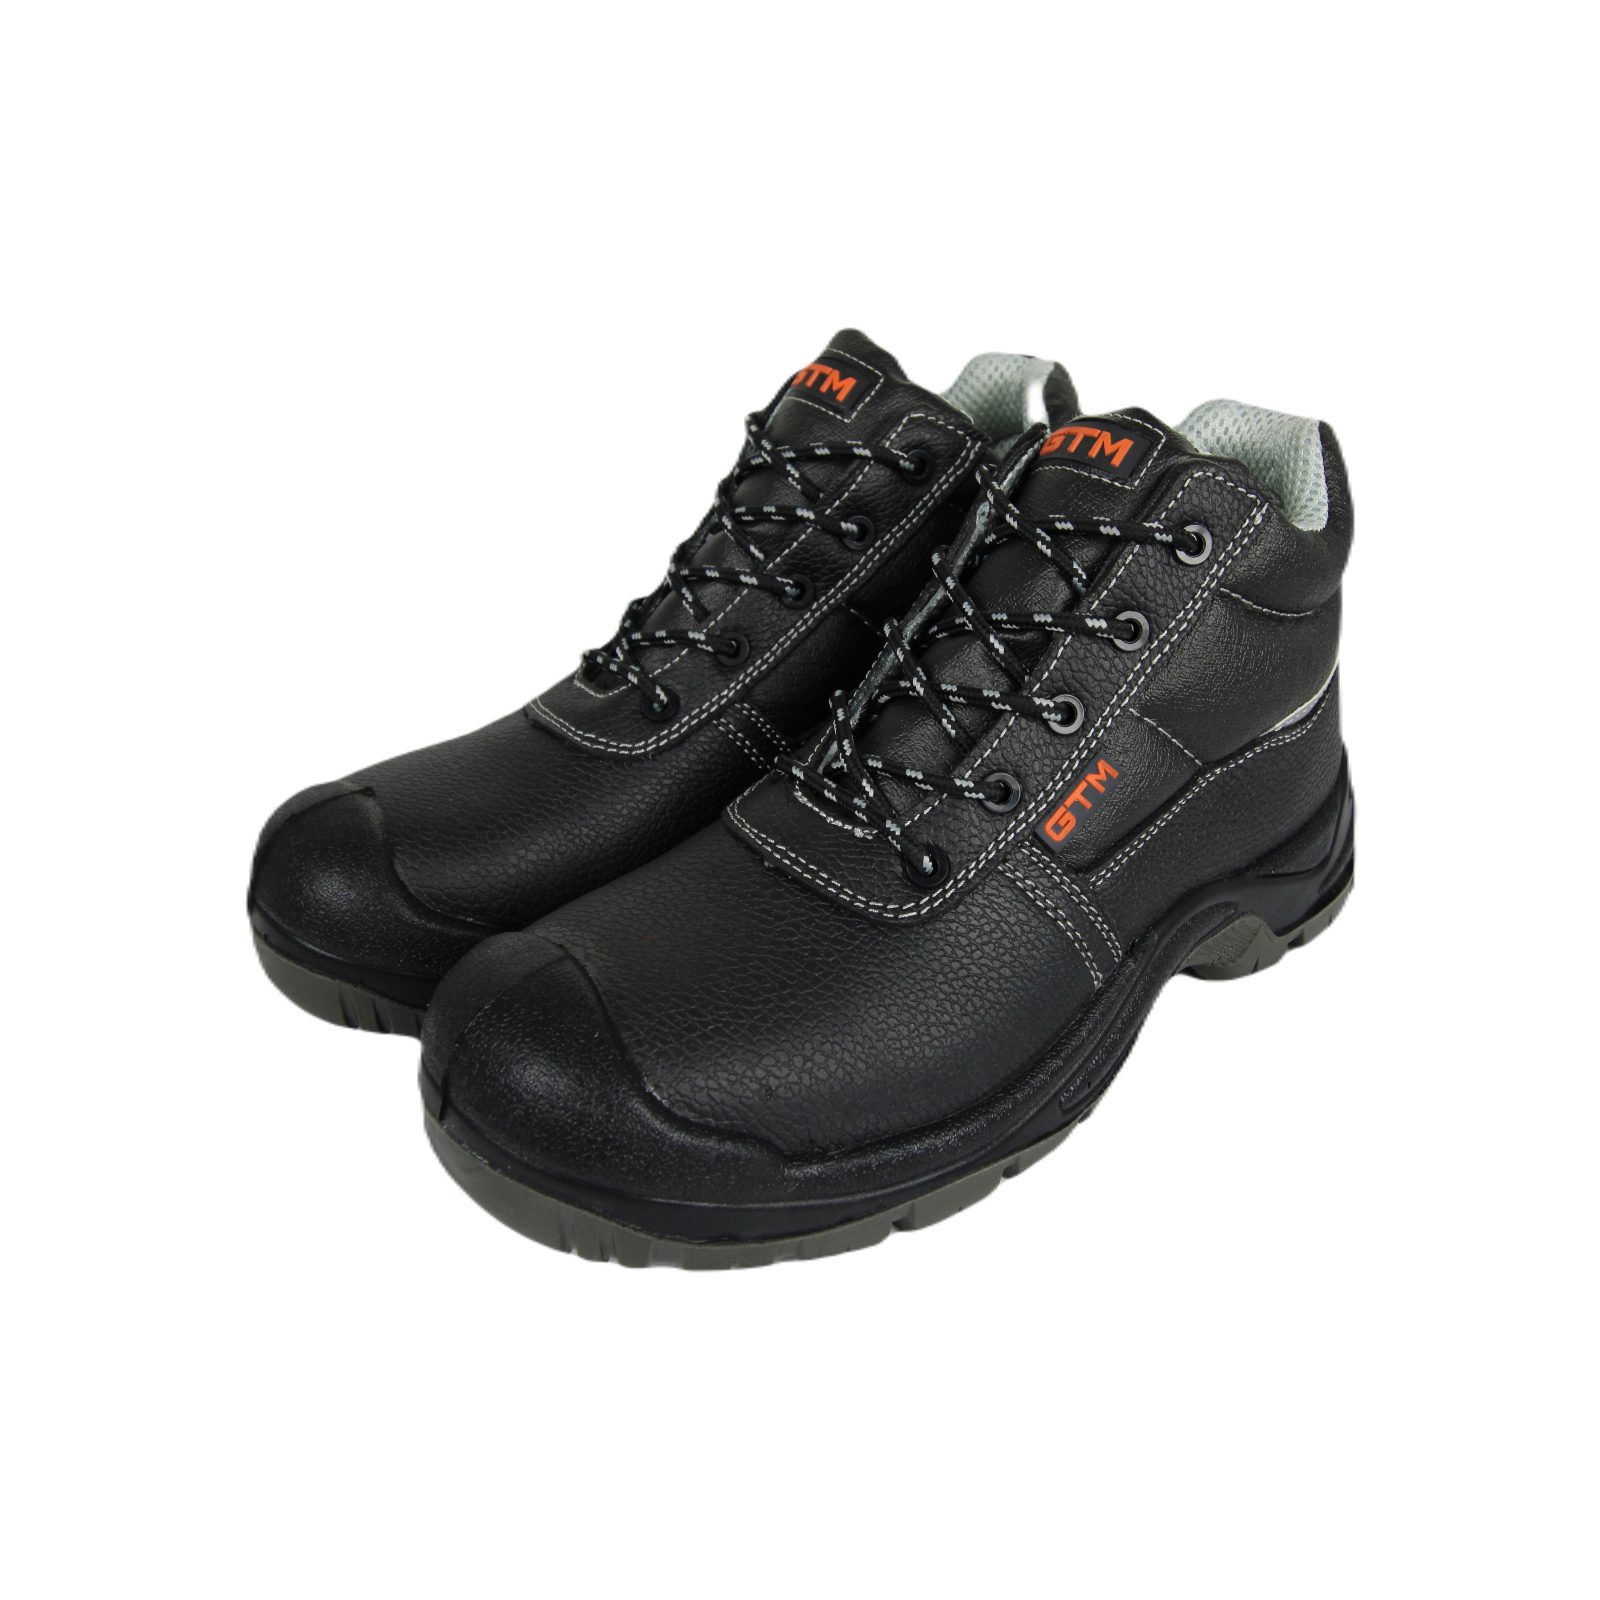 Ботинки рабочие GTM SM-071 г.40 композ.носок, на шнурках S3 SRC Comfort (SM-071-40)